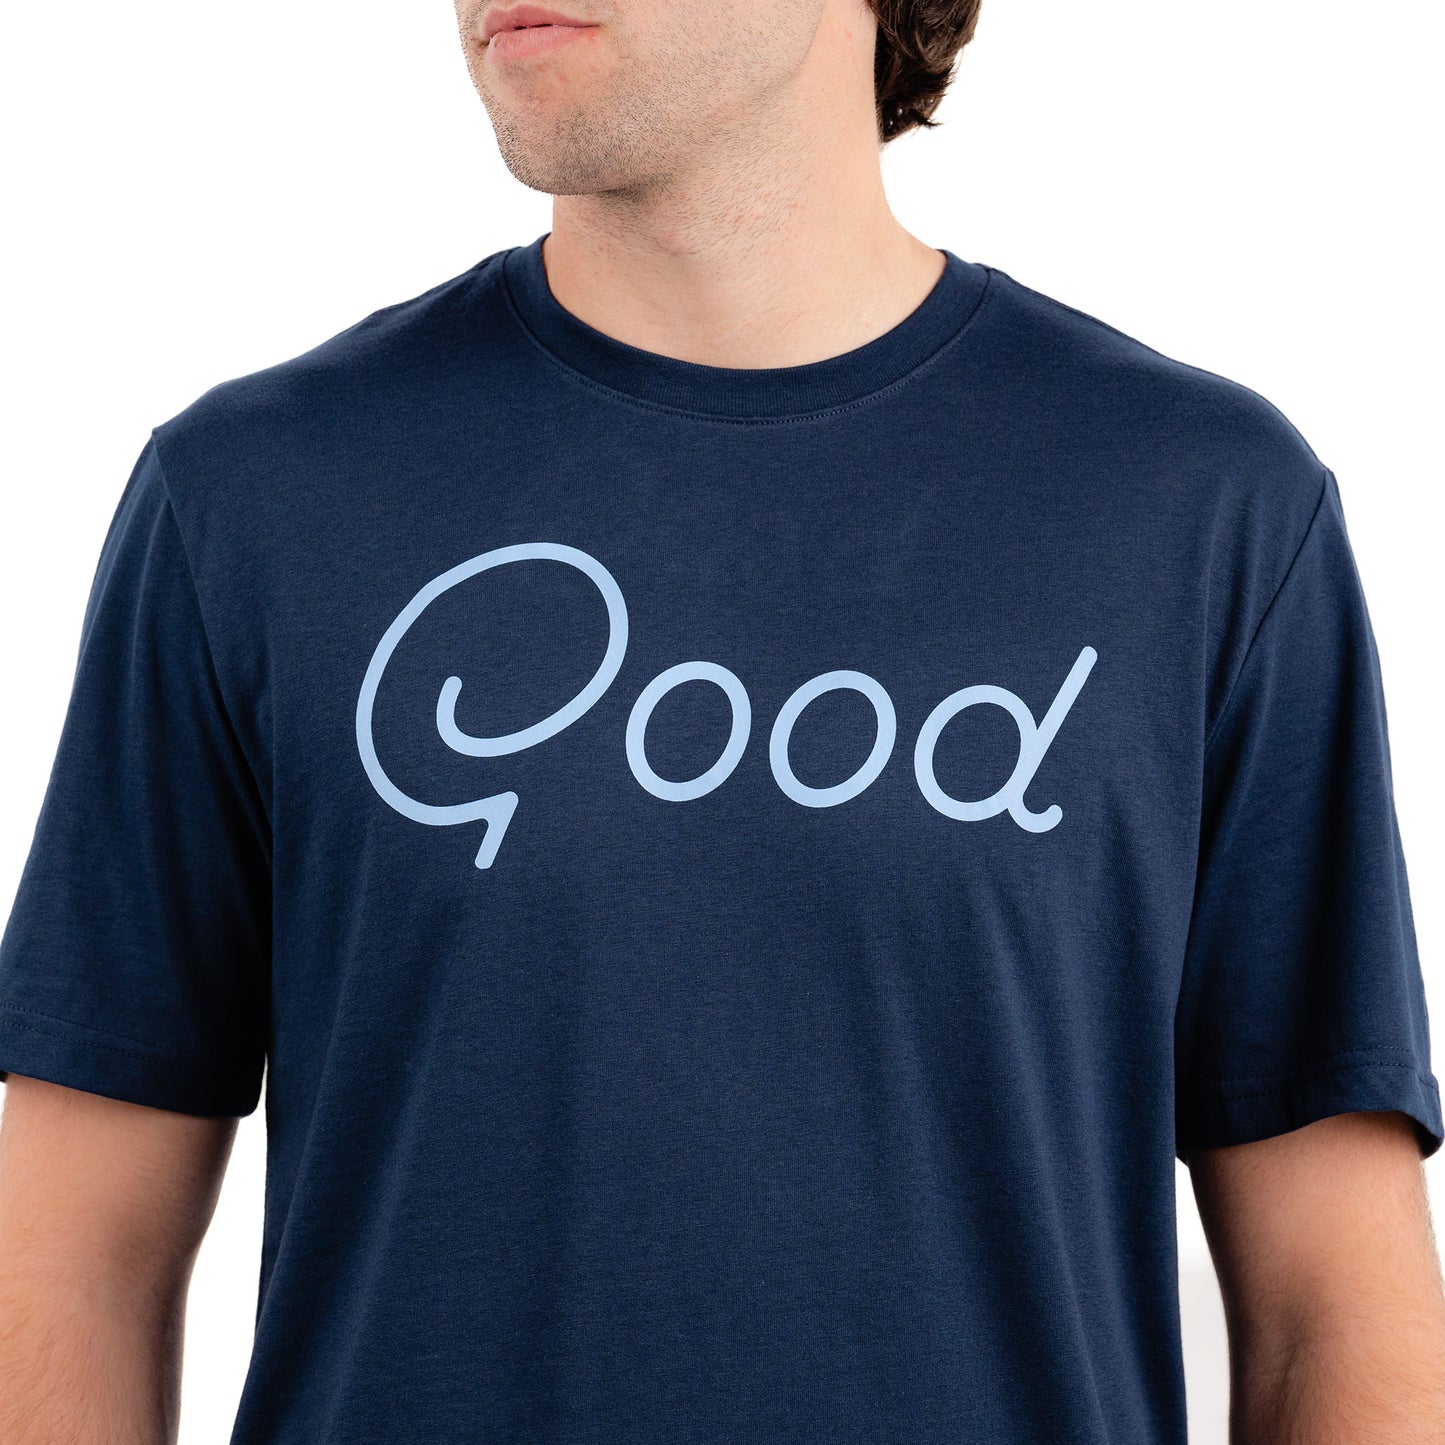 Good Navy T-Shirt Ultra Soft Men's T-Shirt from Good Good Golf